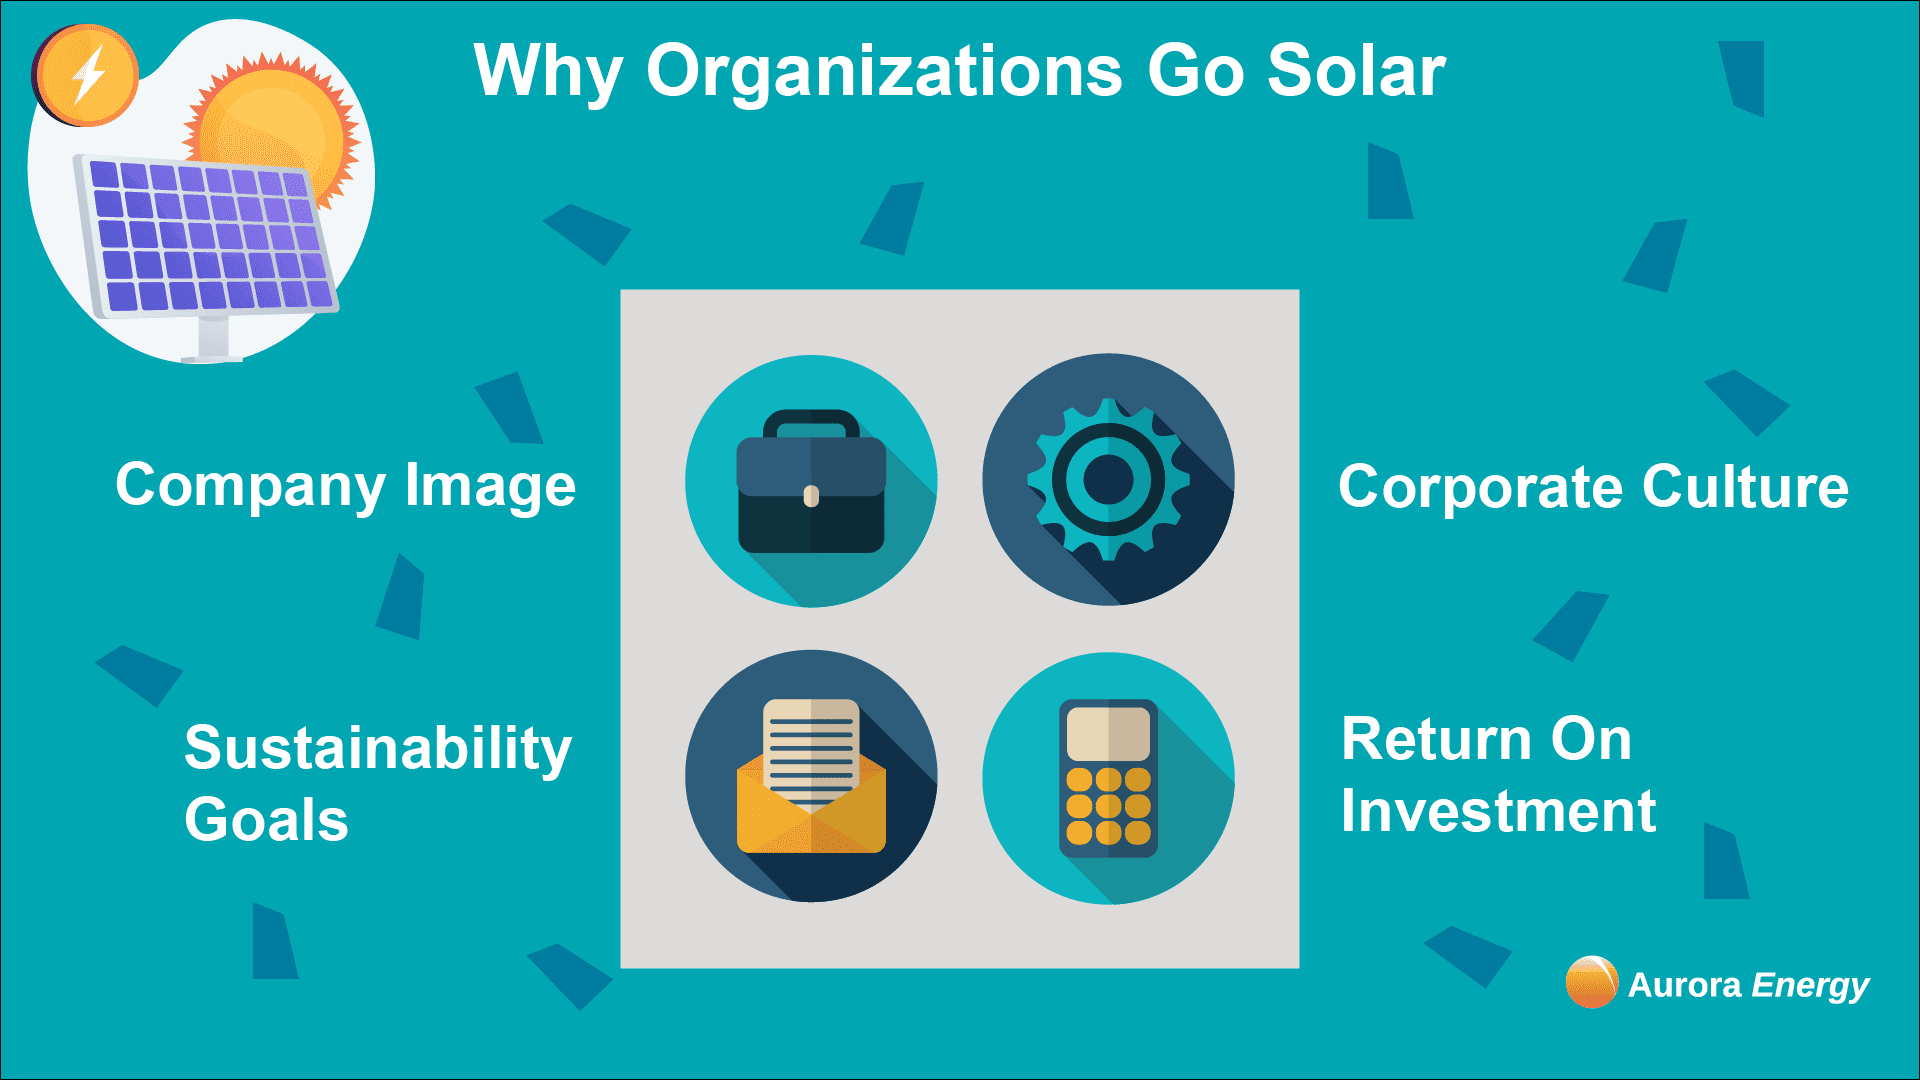 Reasons why organizations go solar